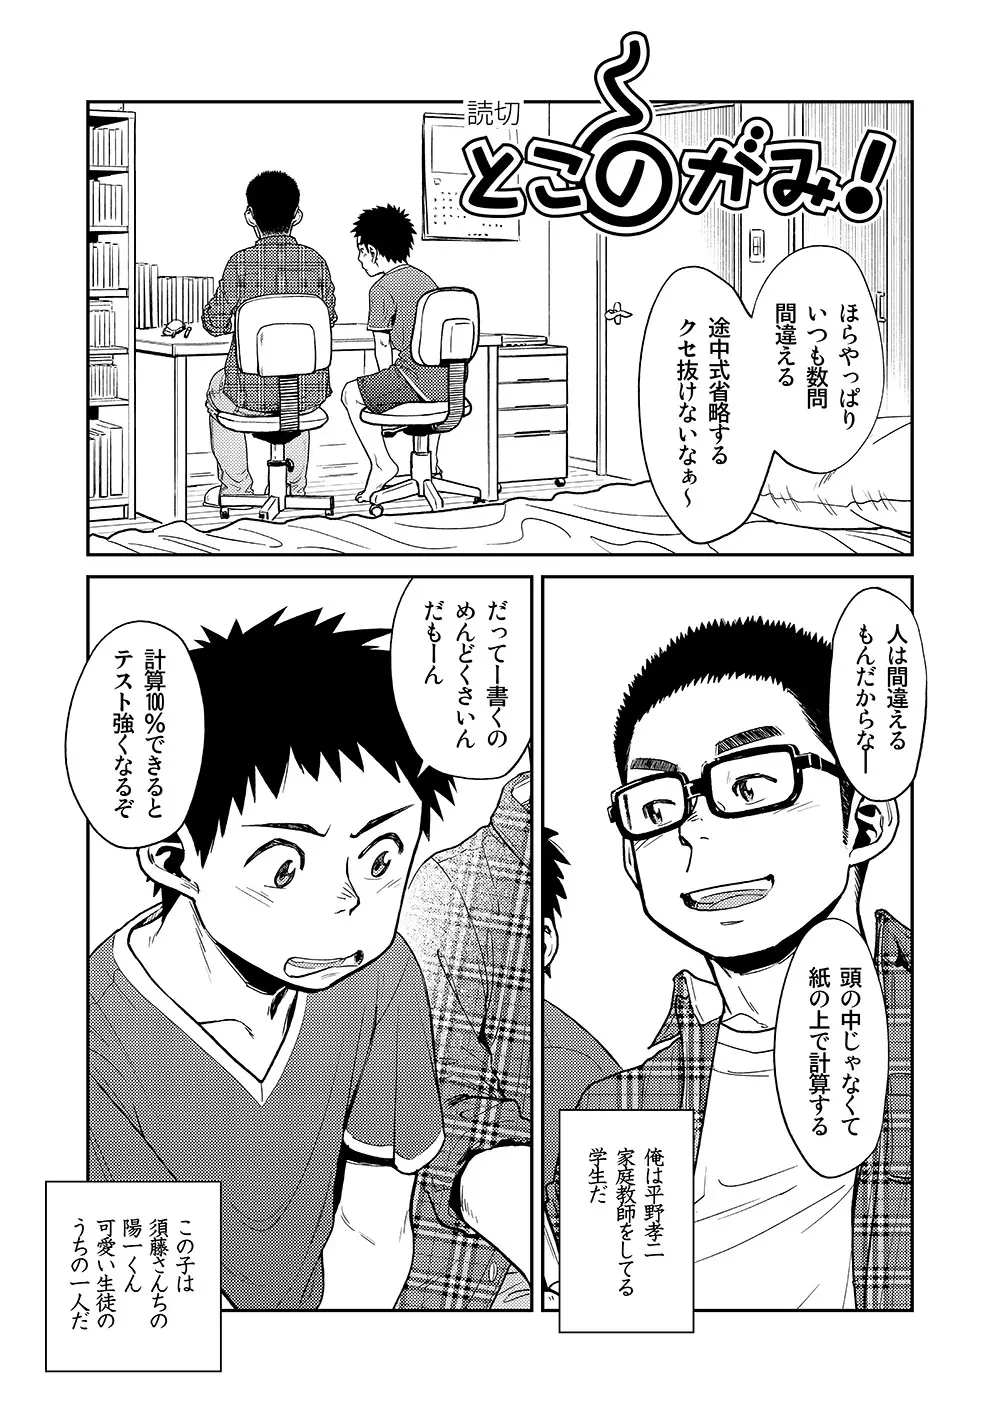 漫画少年ズーム VOL.11 & 12 29ページ